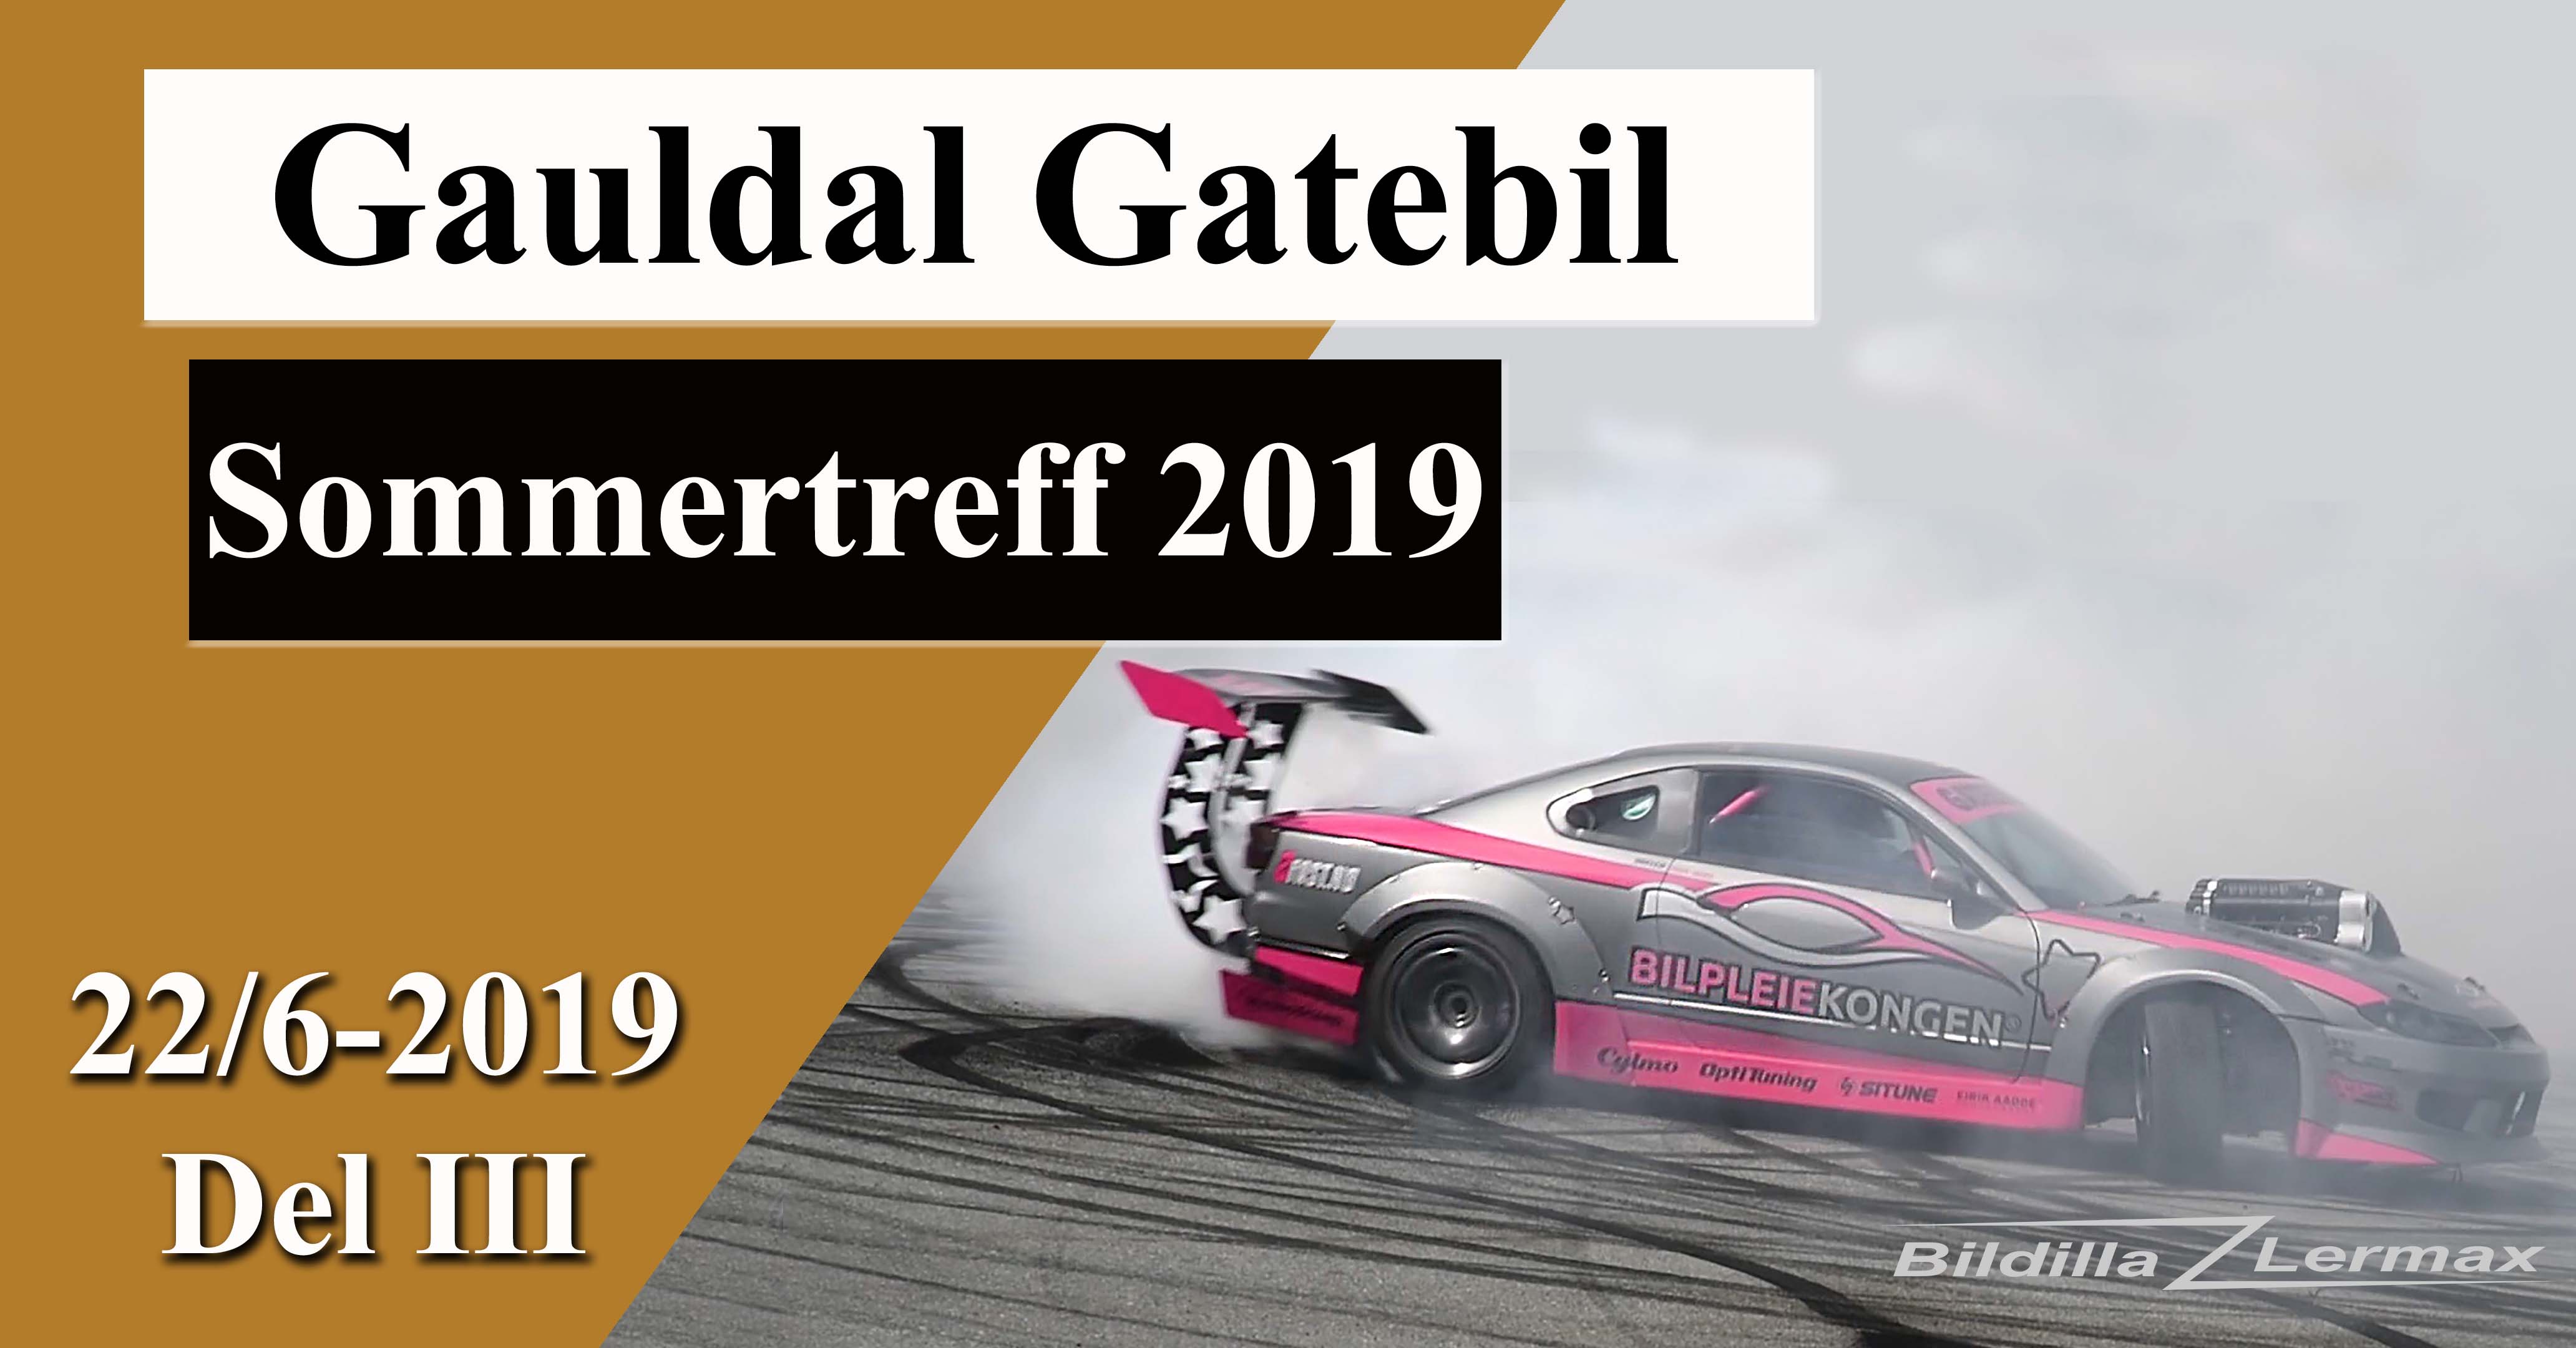 Gauldal Gatebil`s Sommertreff 2019. Del 3